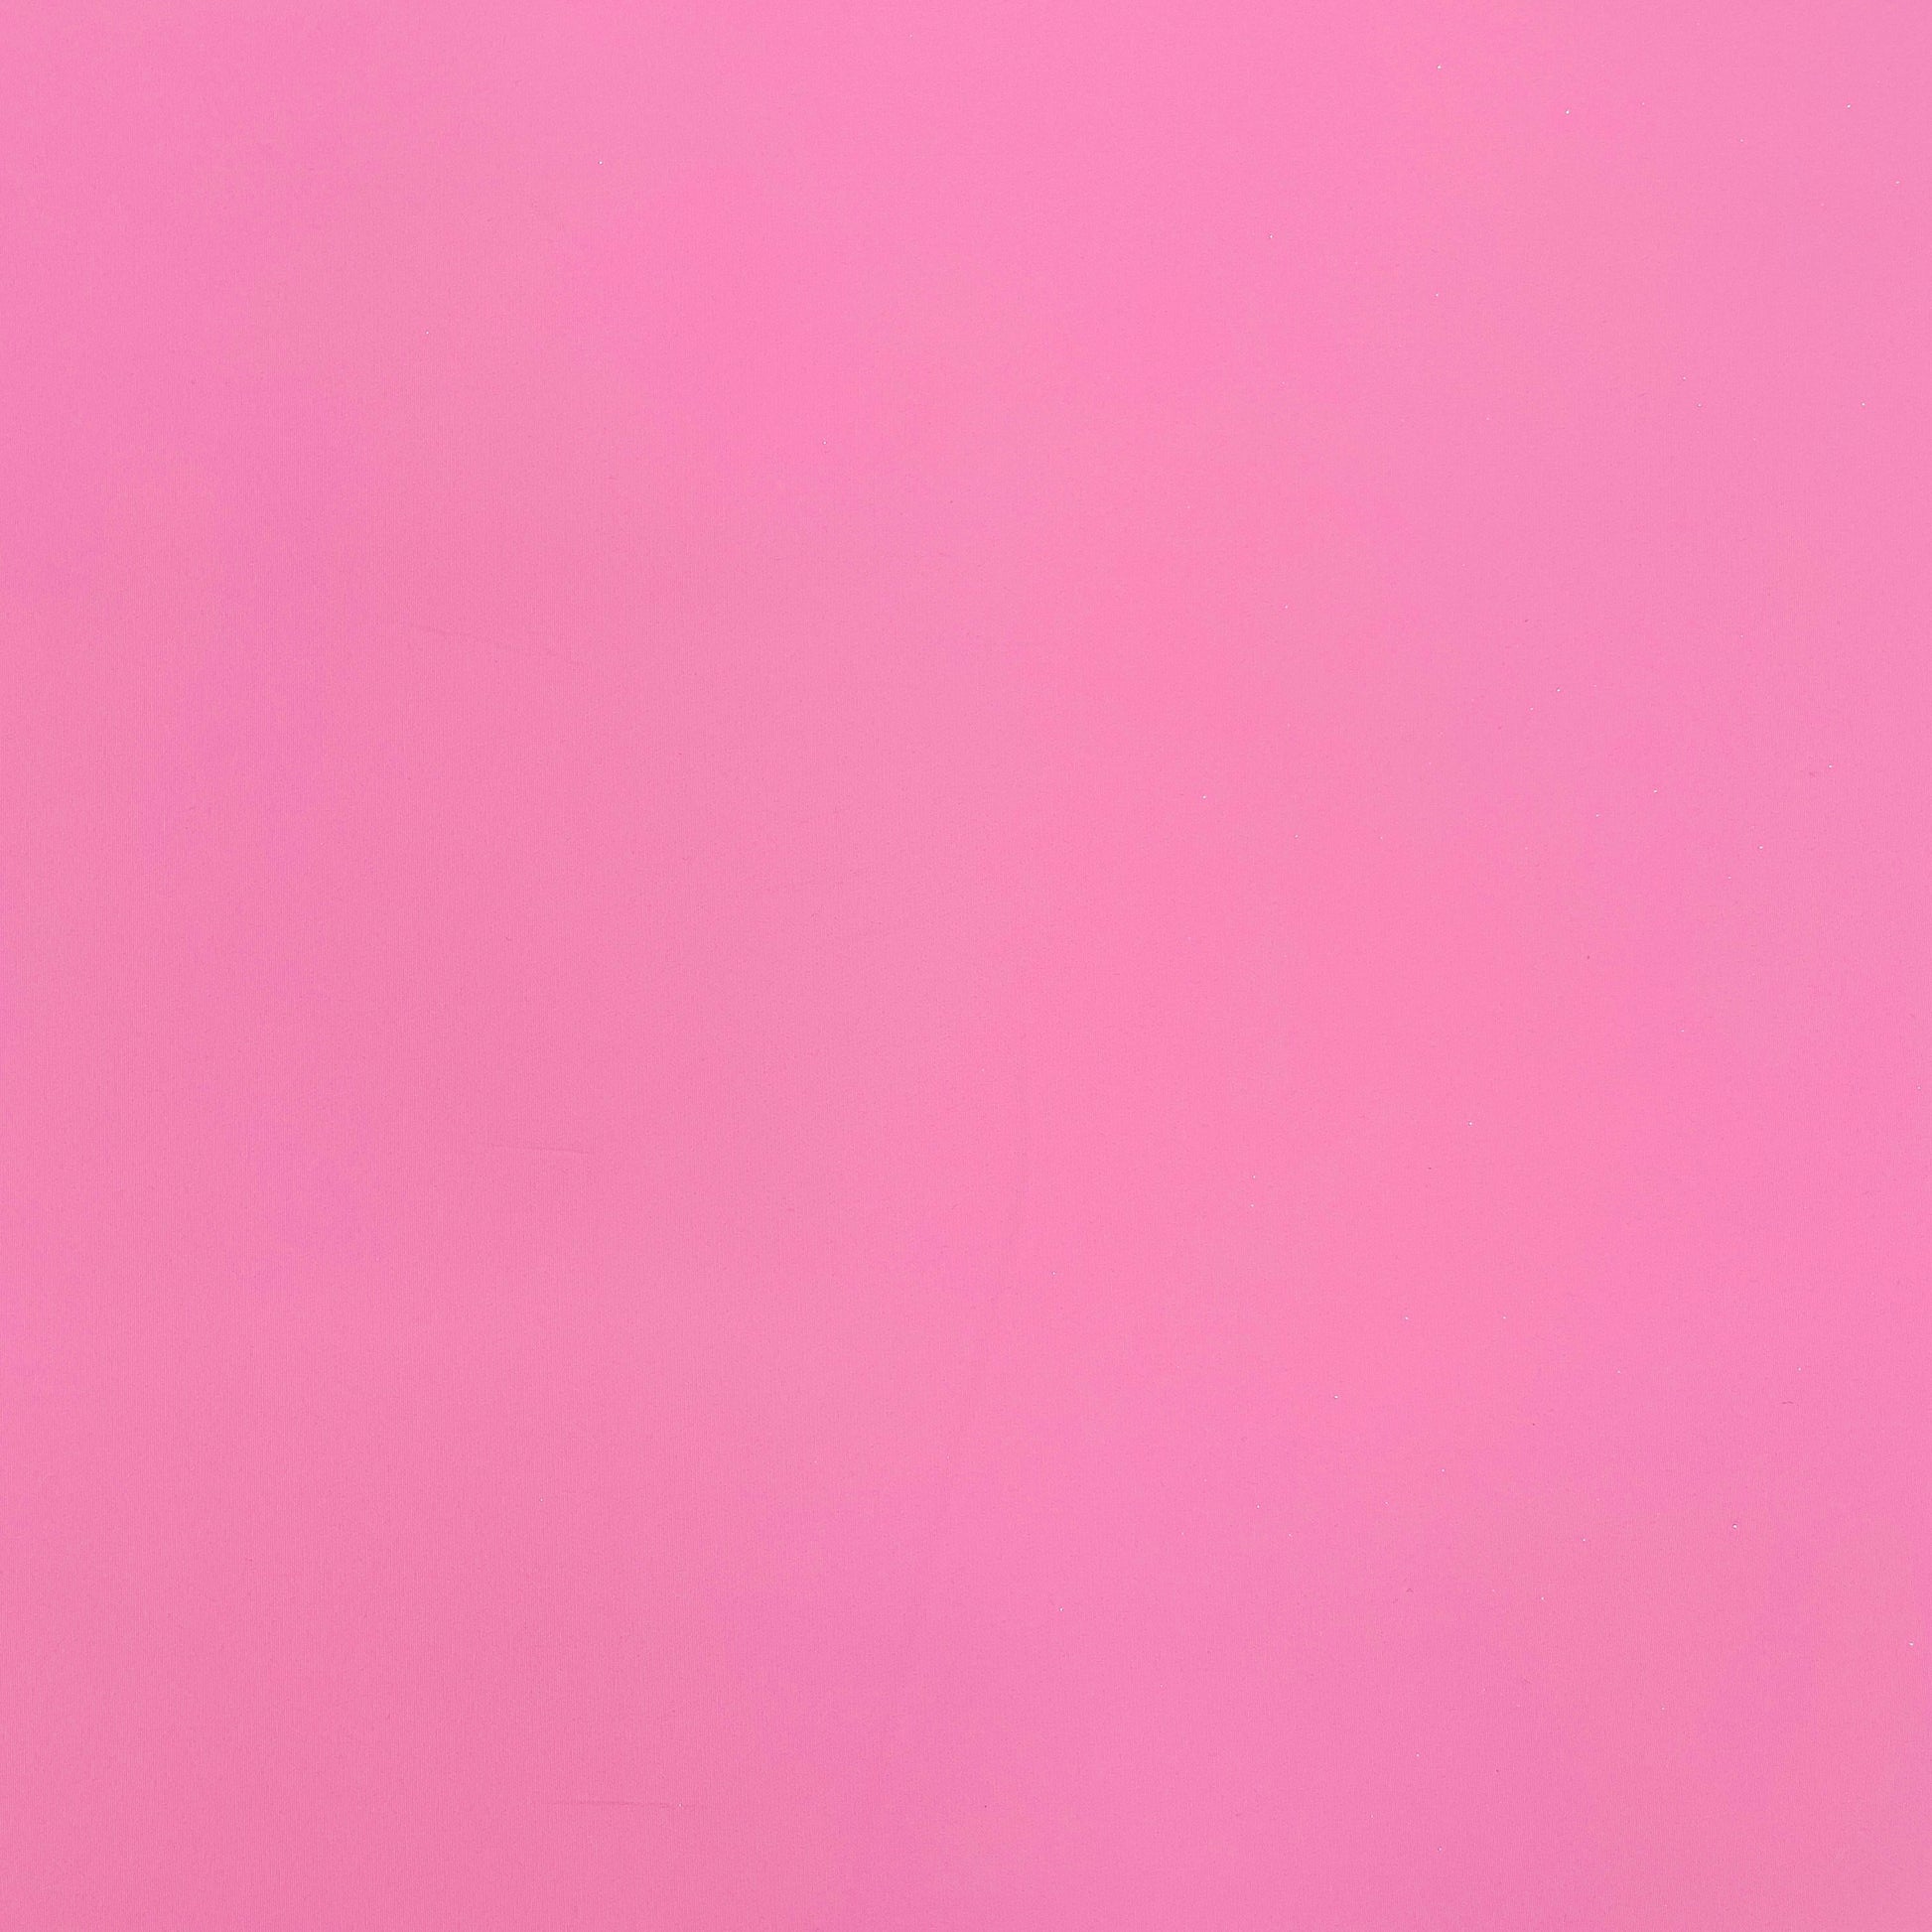 Pink Solid Banana Crepe Fabric - TradeUNO